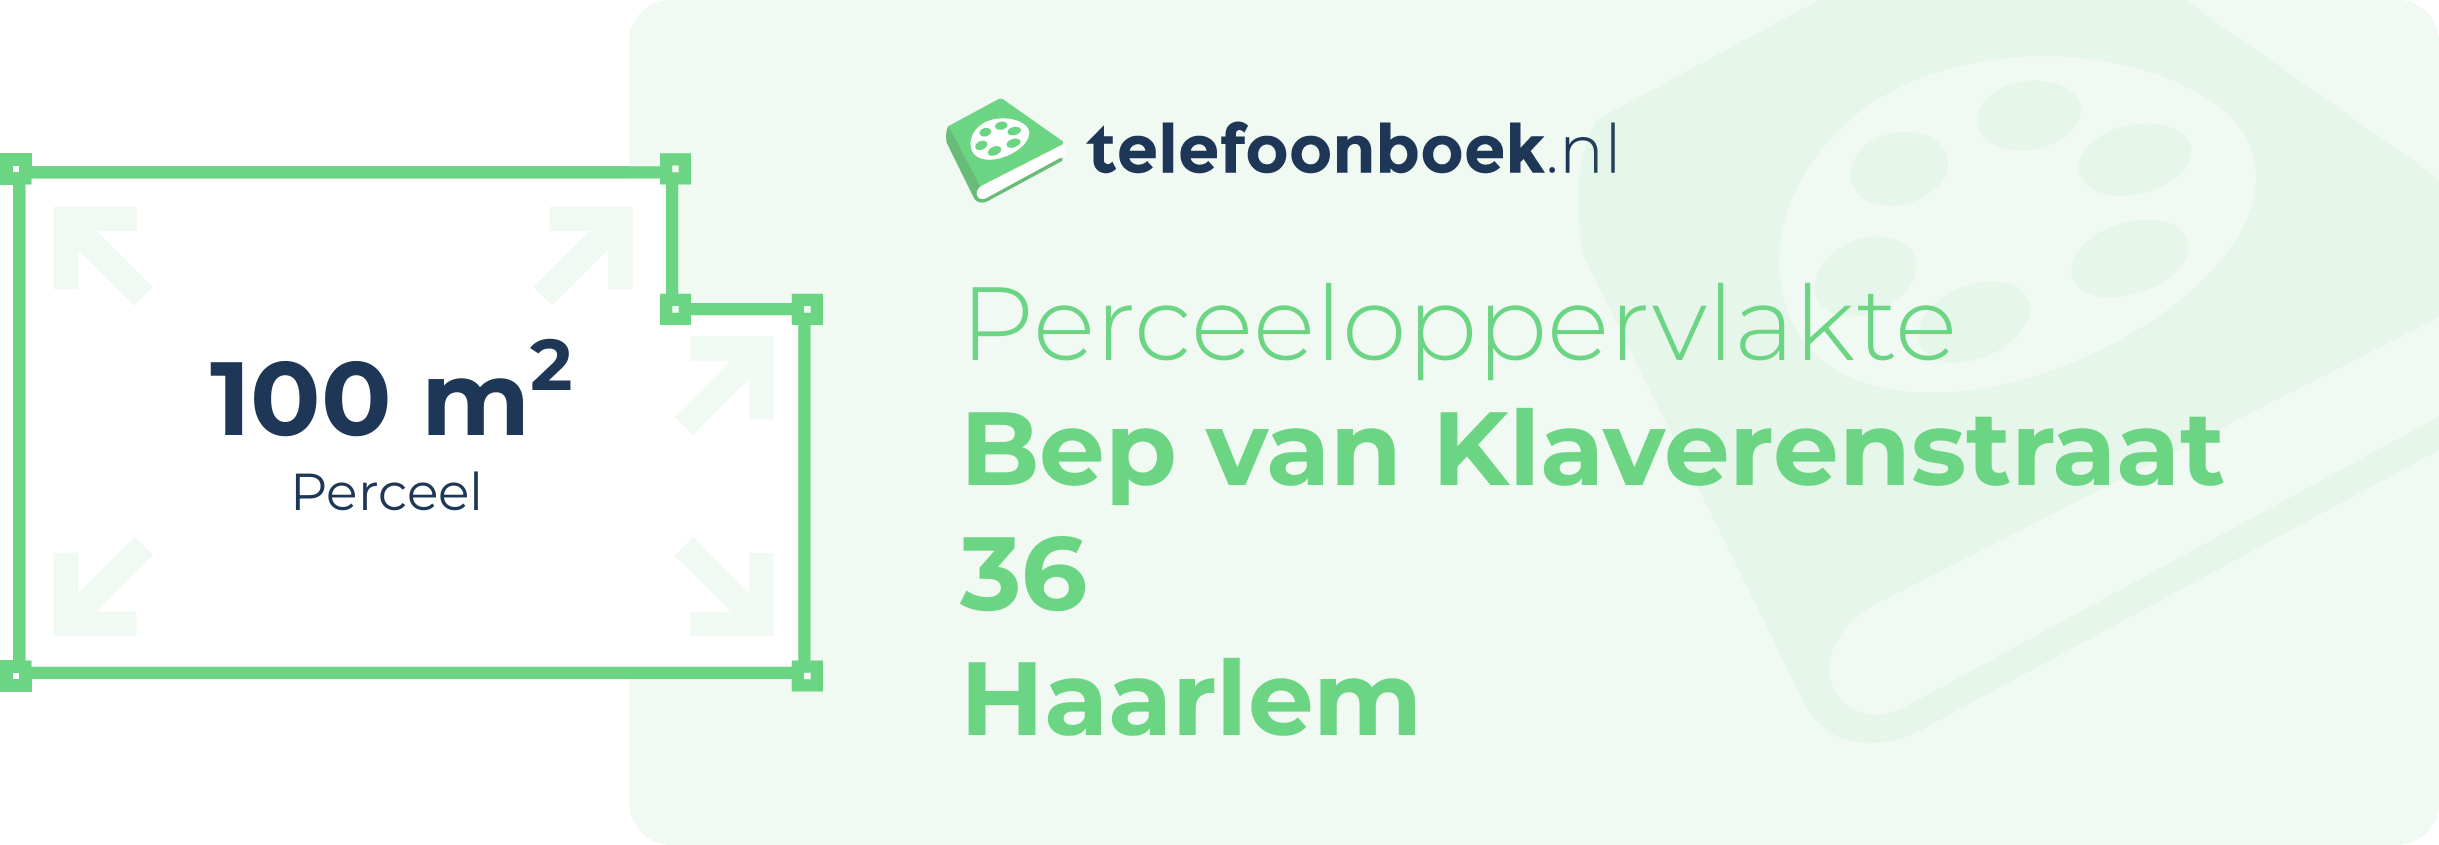 Perceeloppervlakte Bep Van Klaverenstraat 36 Haarlem